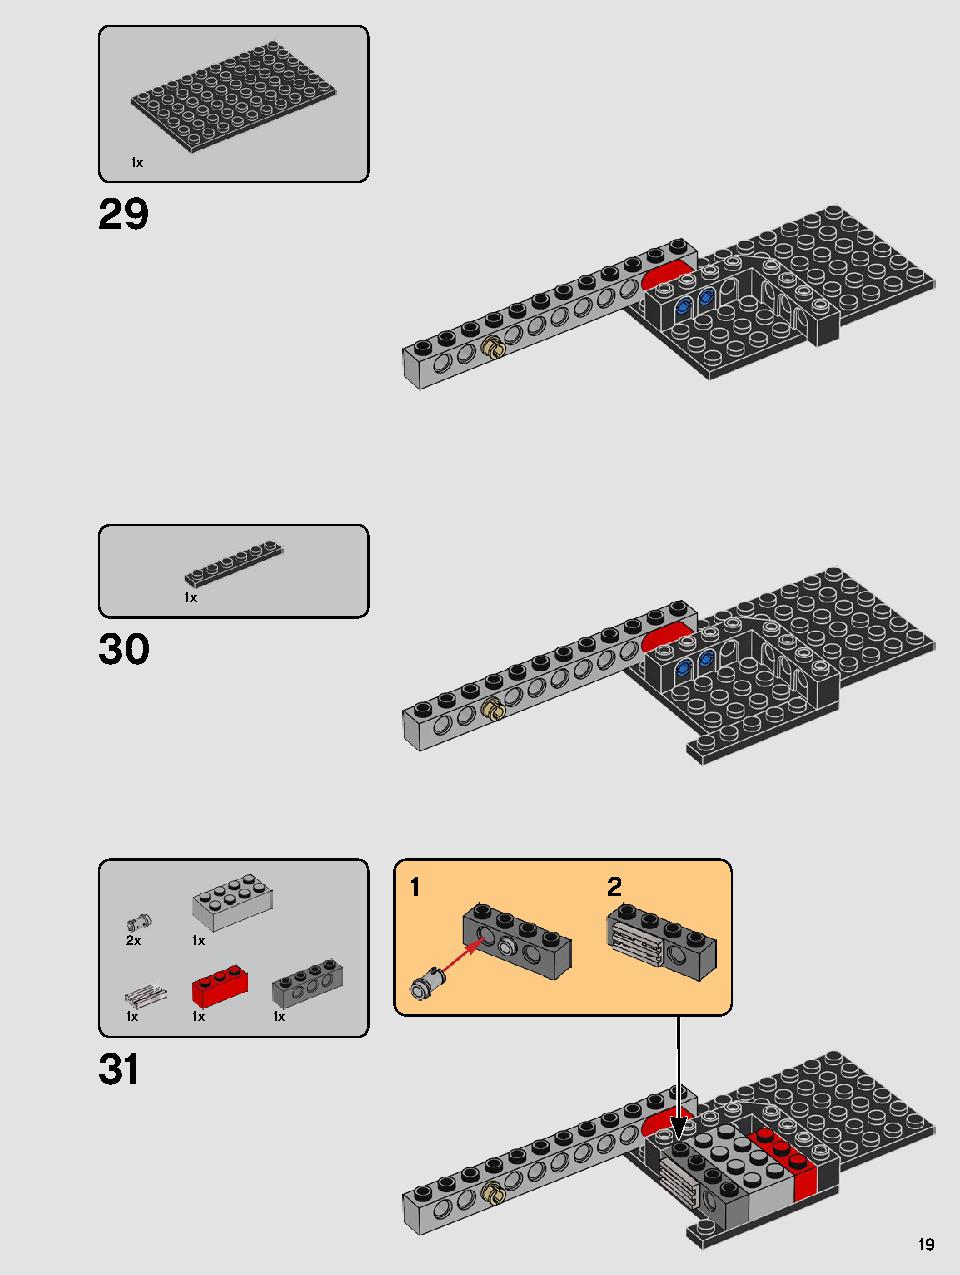 스타워즈 카일로 렌의 셔틀™ 75256 레고 세트 제품정보 레고 조립설명서 19 page